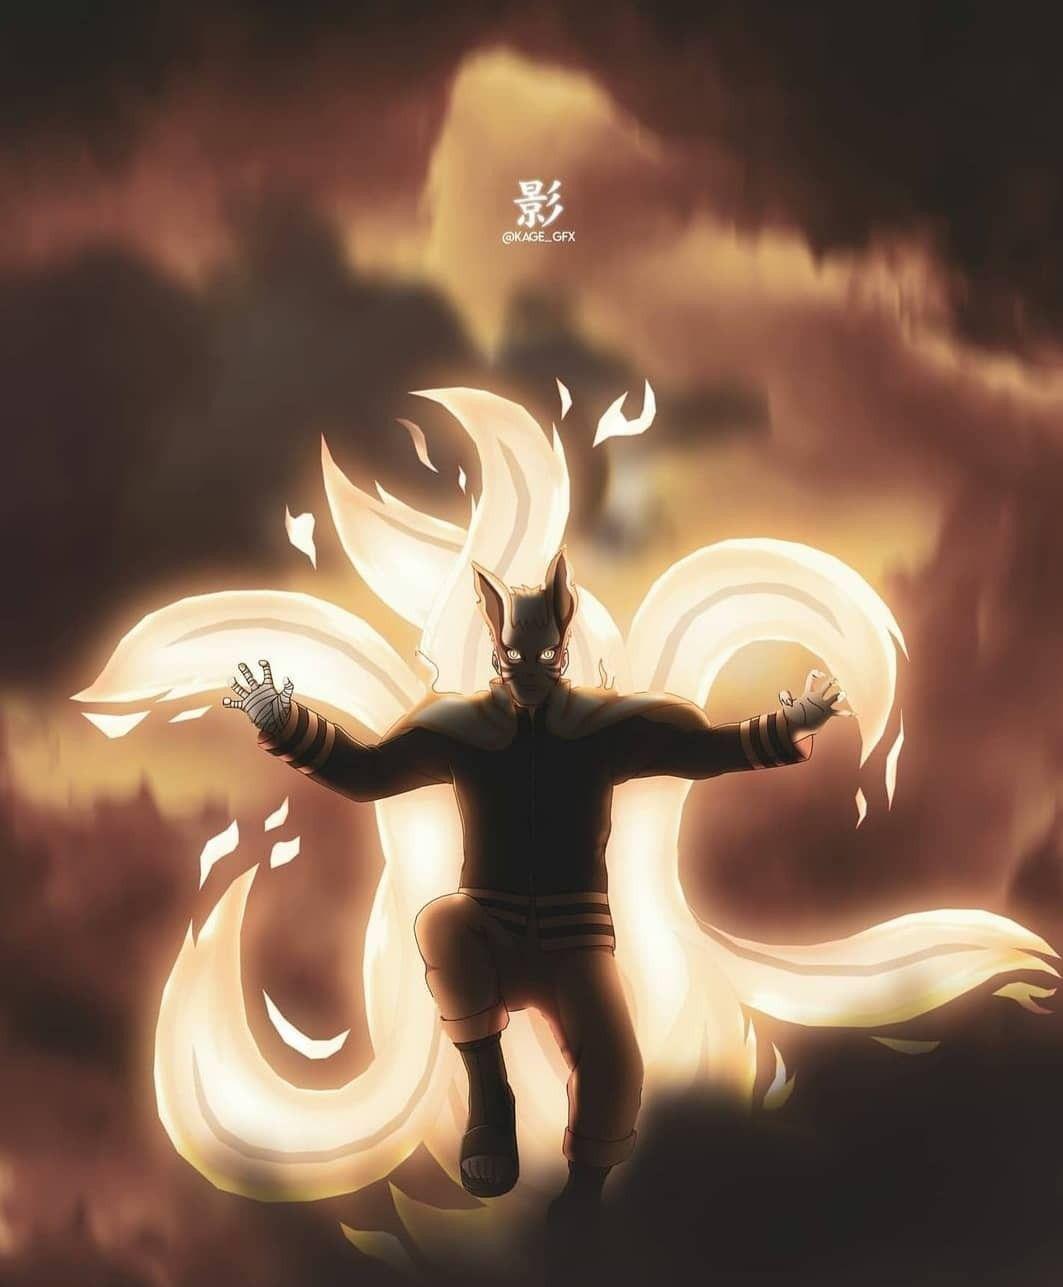 Boruto Naruto Next Generation  Naruto Uzumaki Baryon Mode 4K wallpaper  download